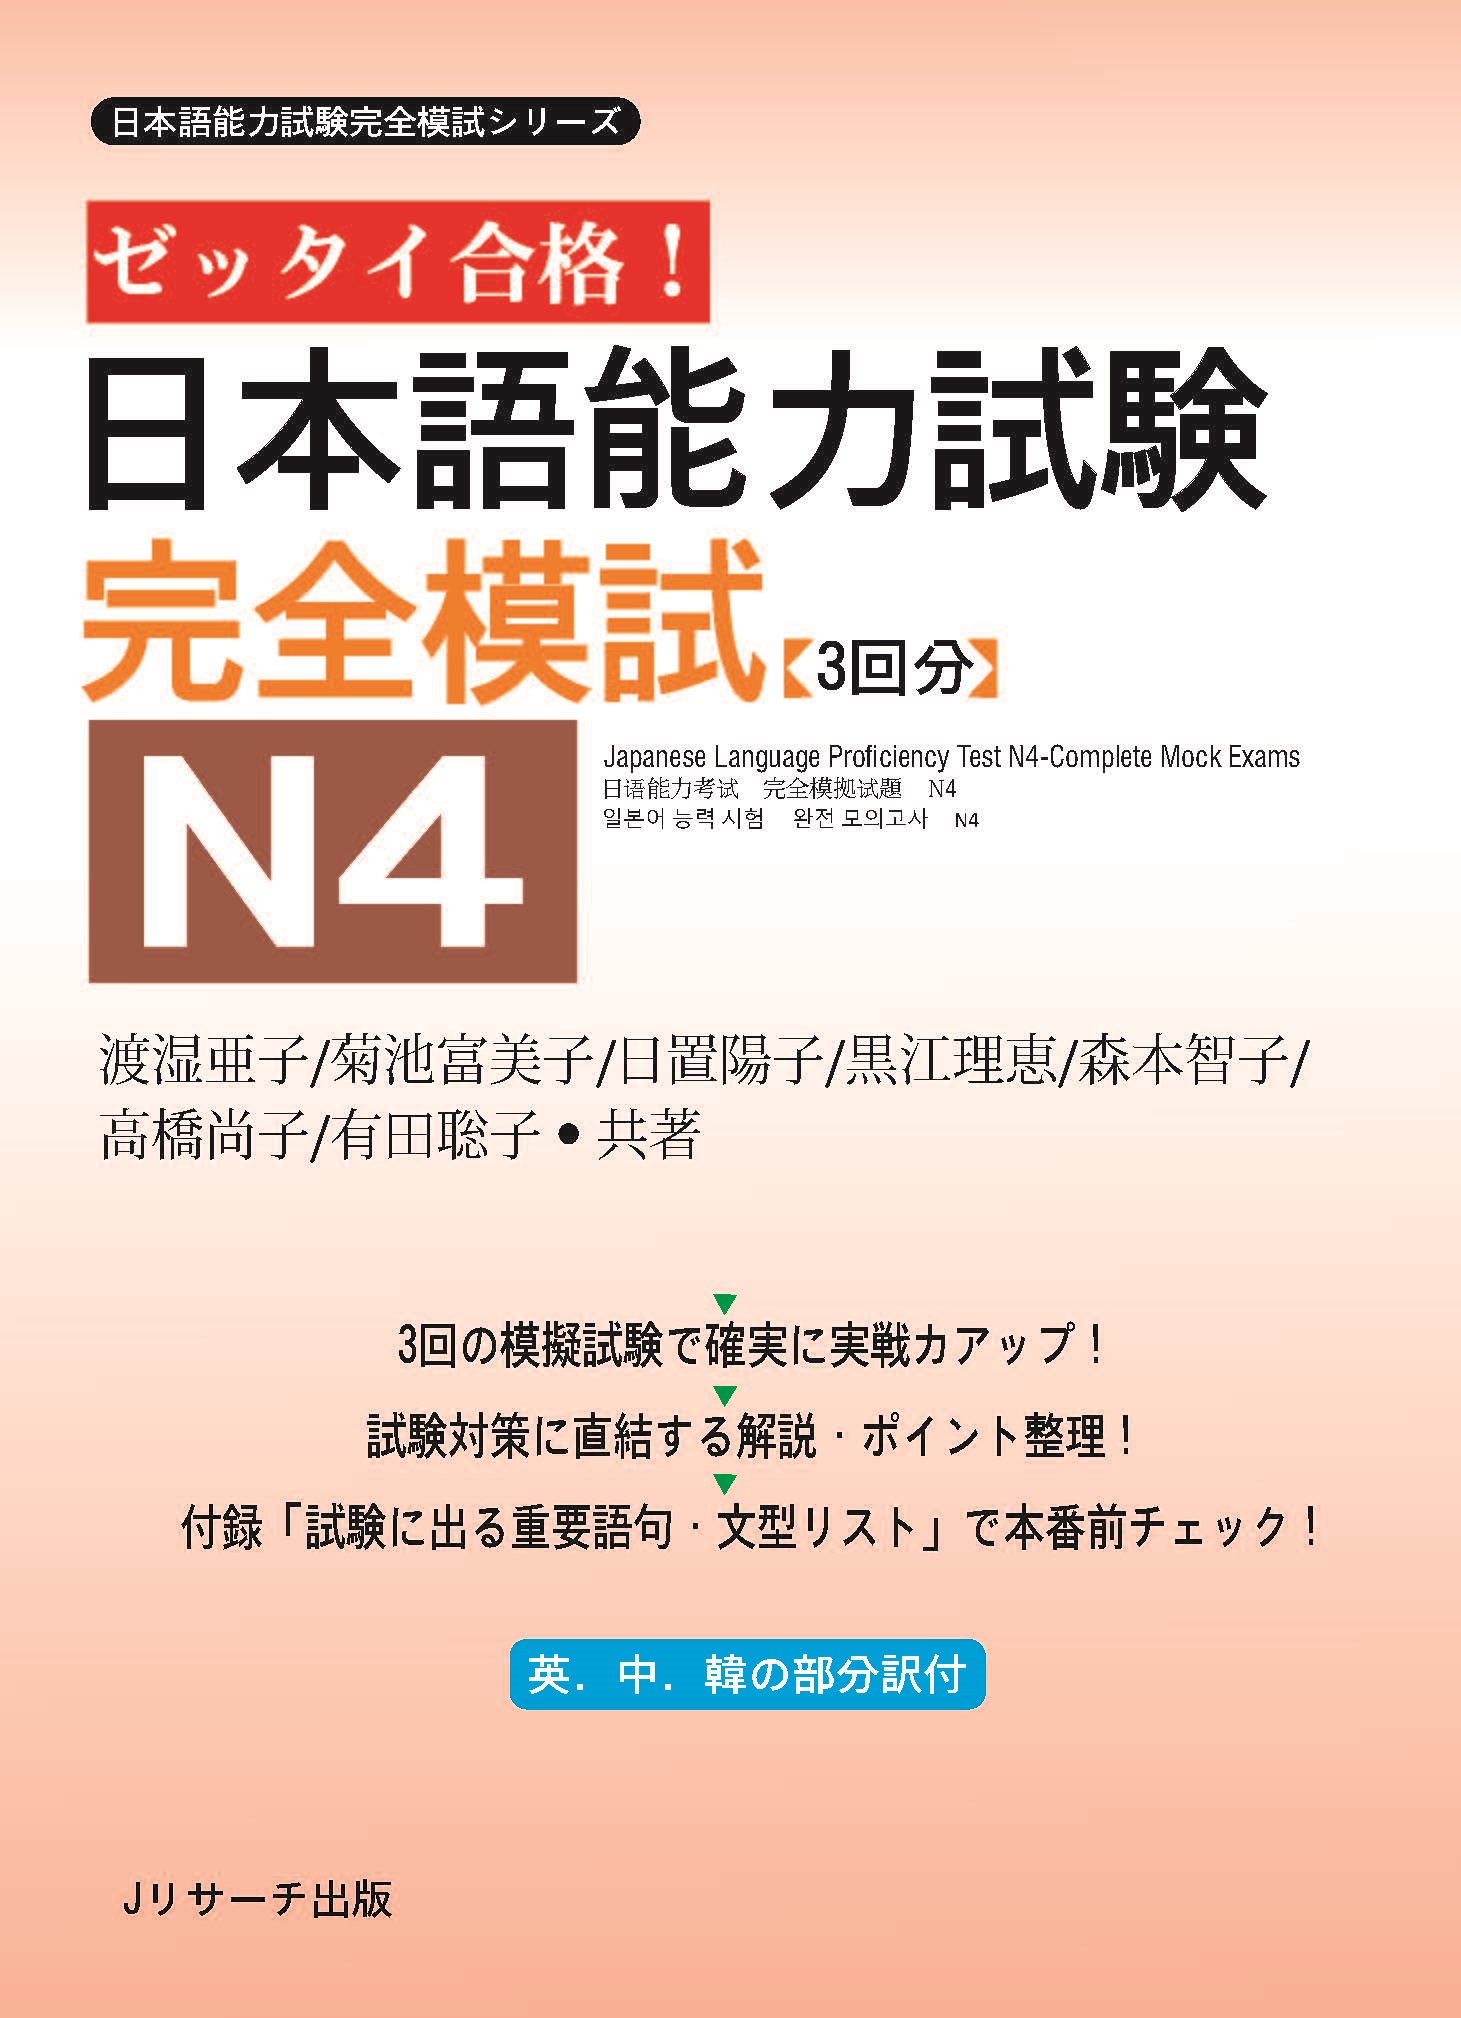 Sách Luyện Thi Zettai Gokaku Kanzen Moshi N4 (Đề Mẫu) | ゼッタイ合格完全模式N4